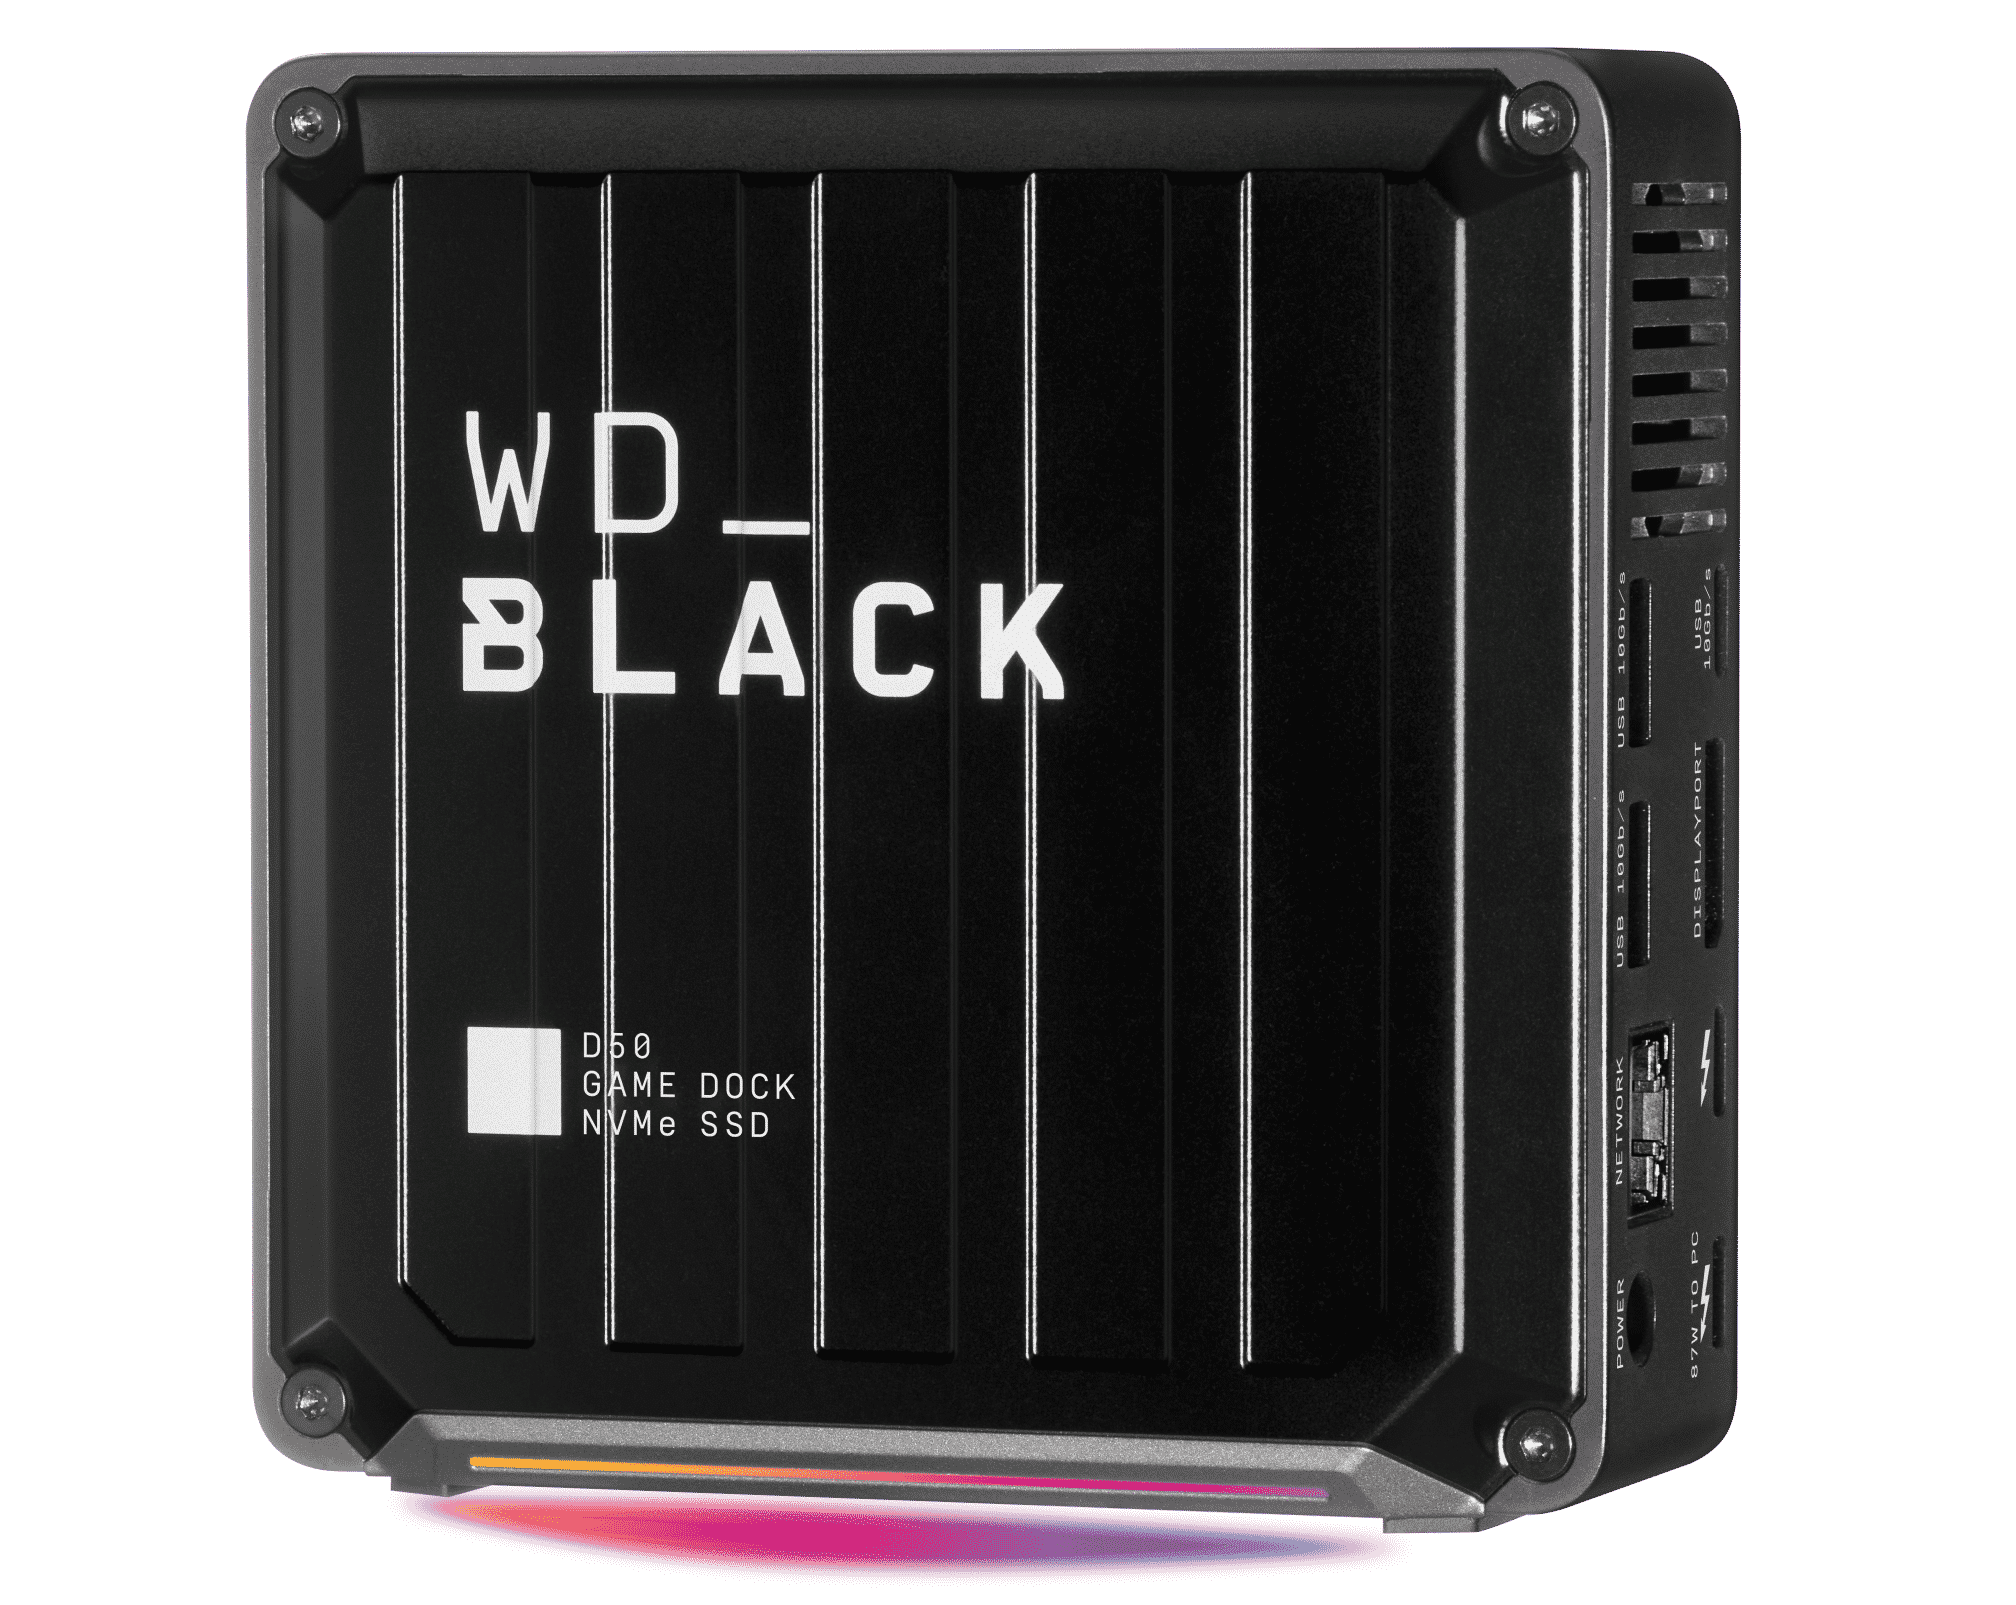 WD_BLACK D50 Game Dock NVMe SSD